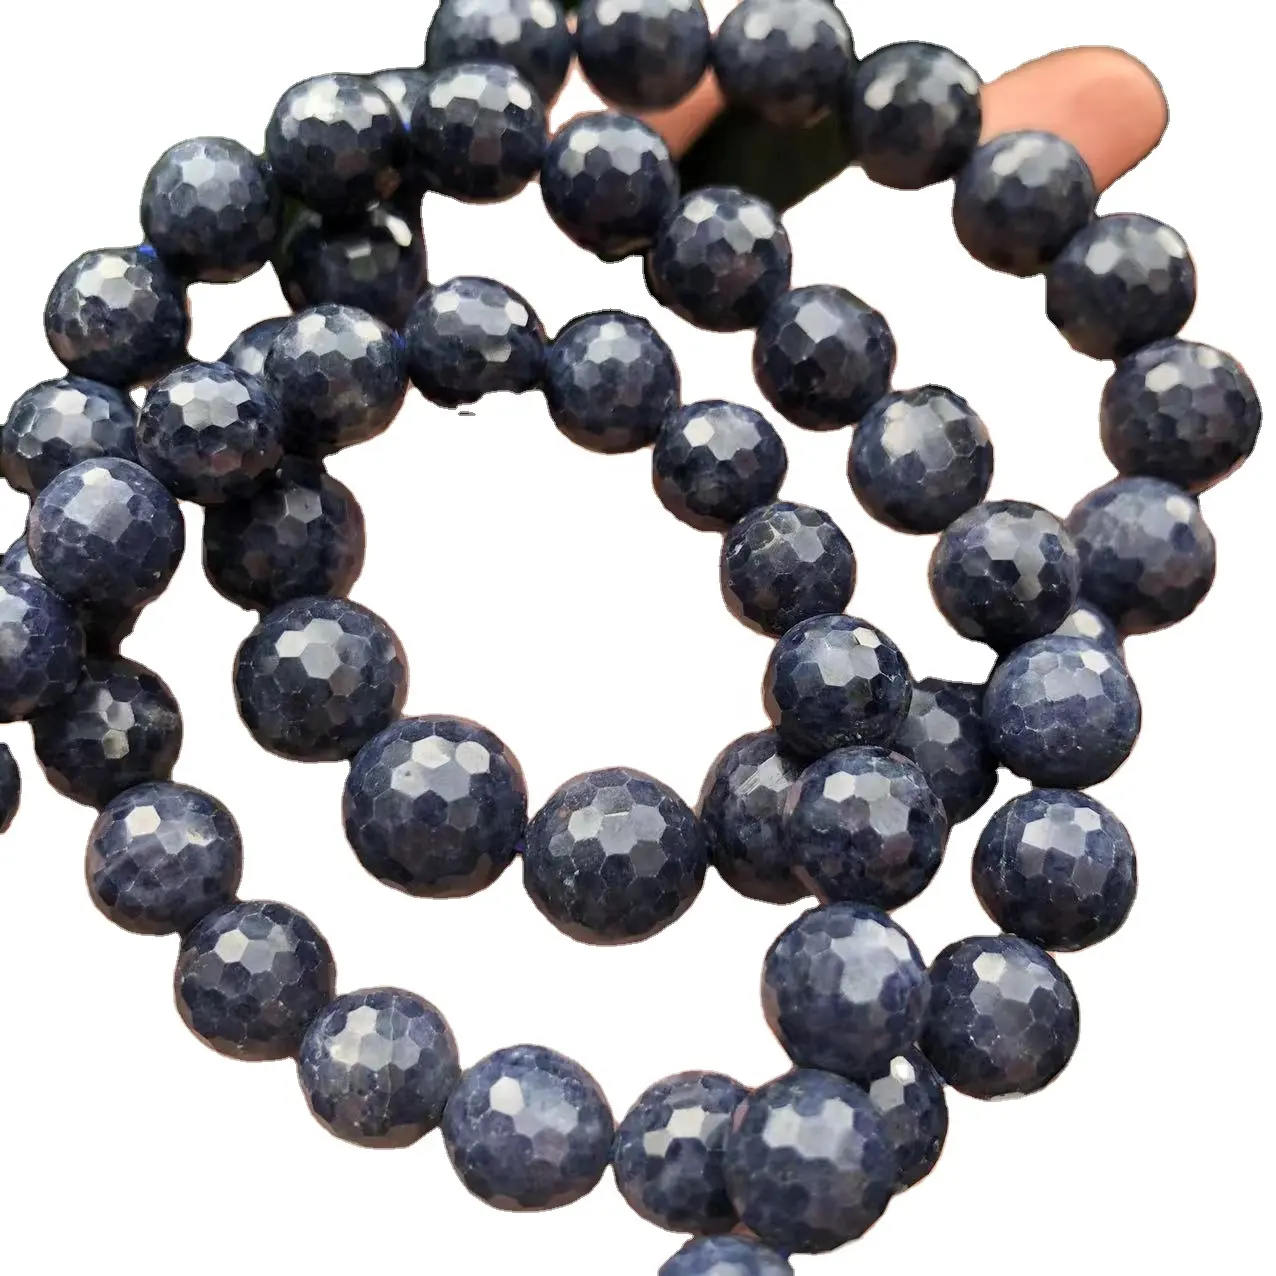 Pierres semi-précieuses rondes à facettes en saphir bleu véritable, pierres précieuses en vrac pour la conception de bijoux